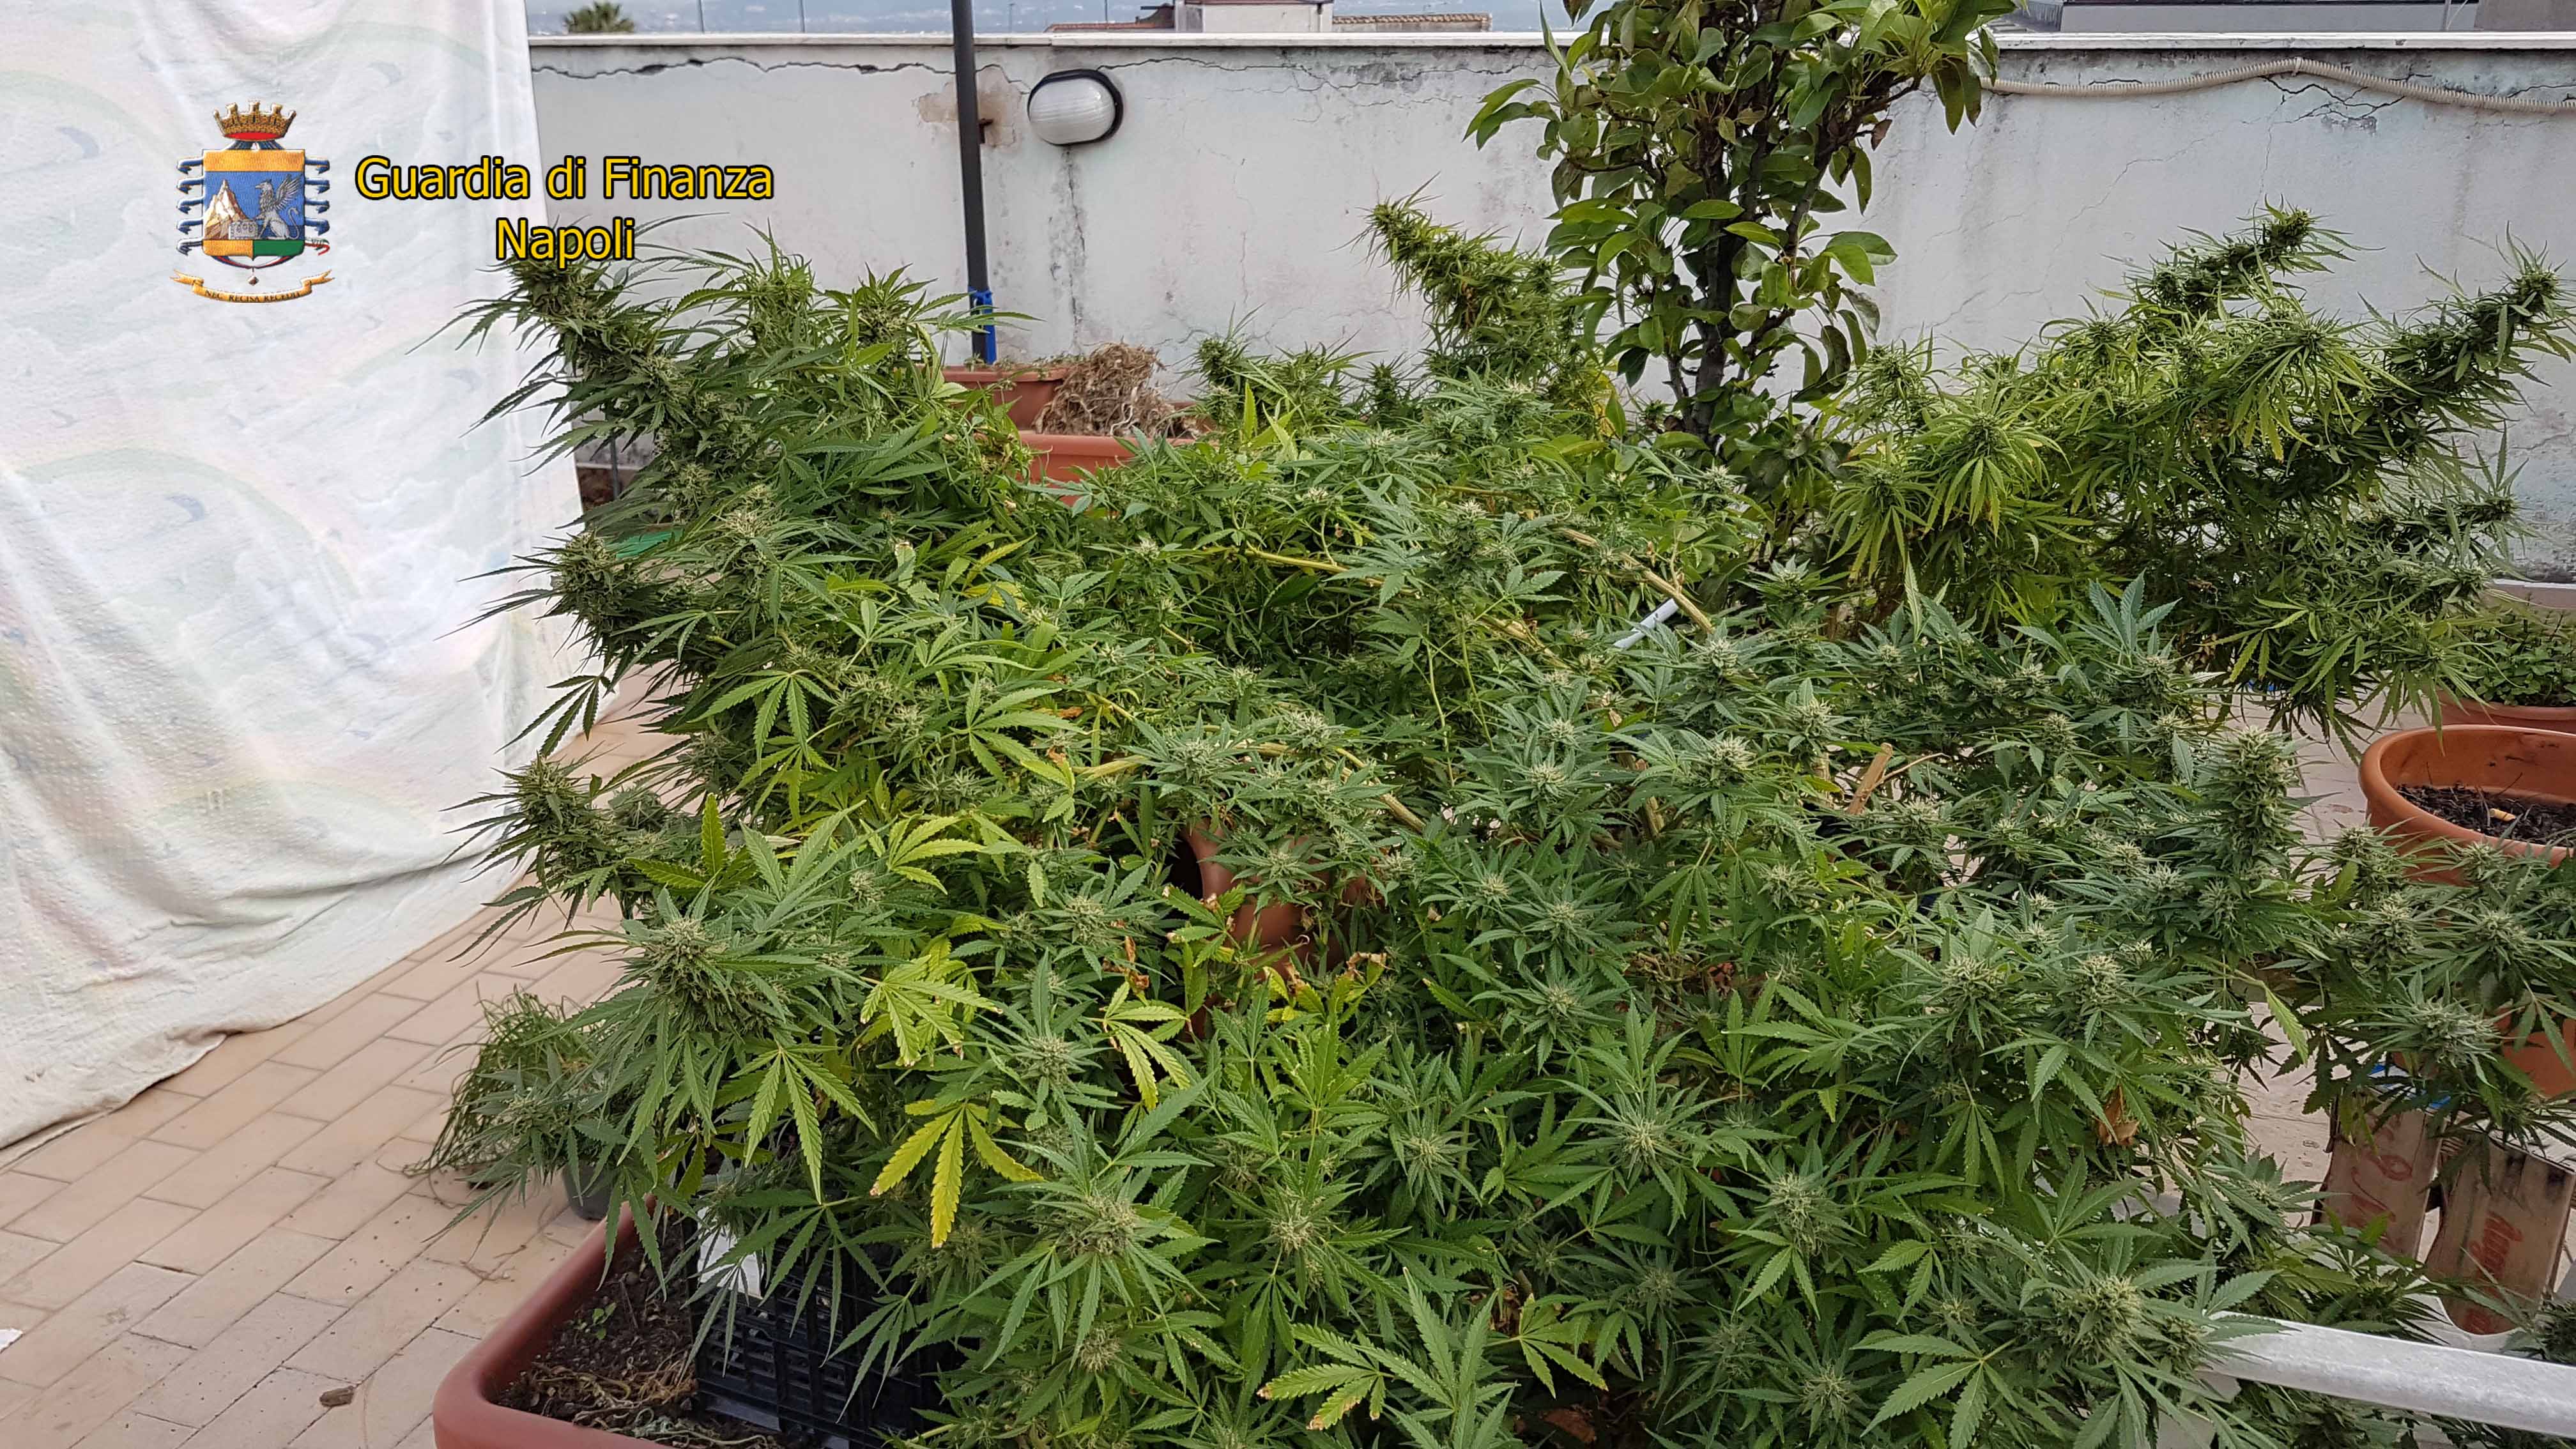  Ottaviano, piantagione di marijuana sul terrazzo: finanzieri arrestano 2 persone